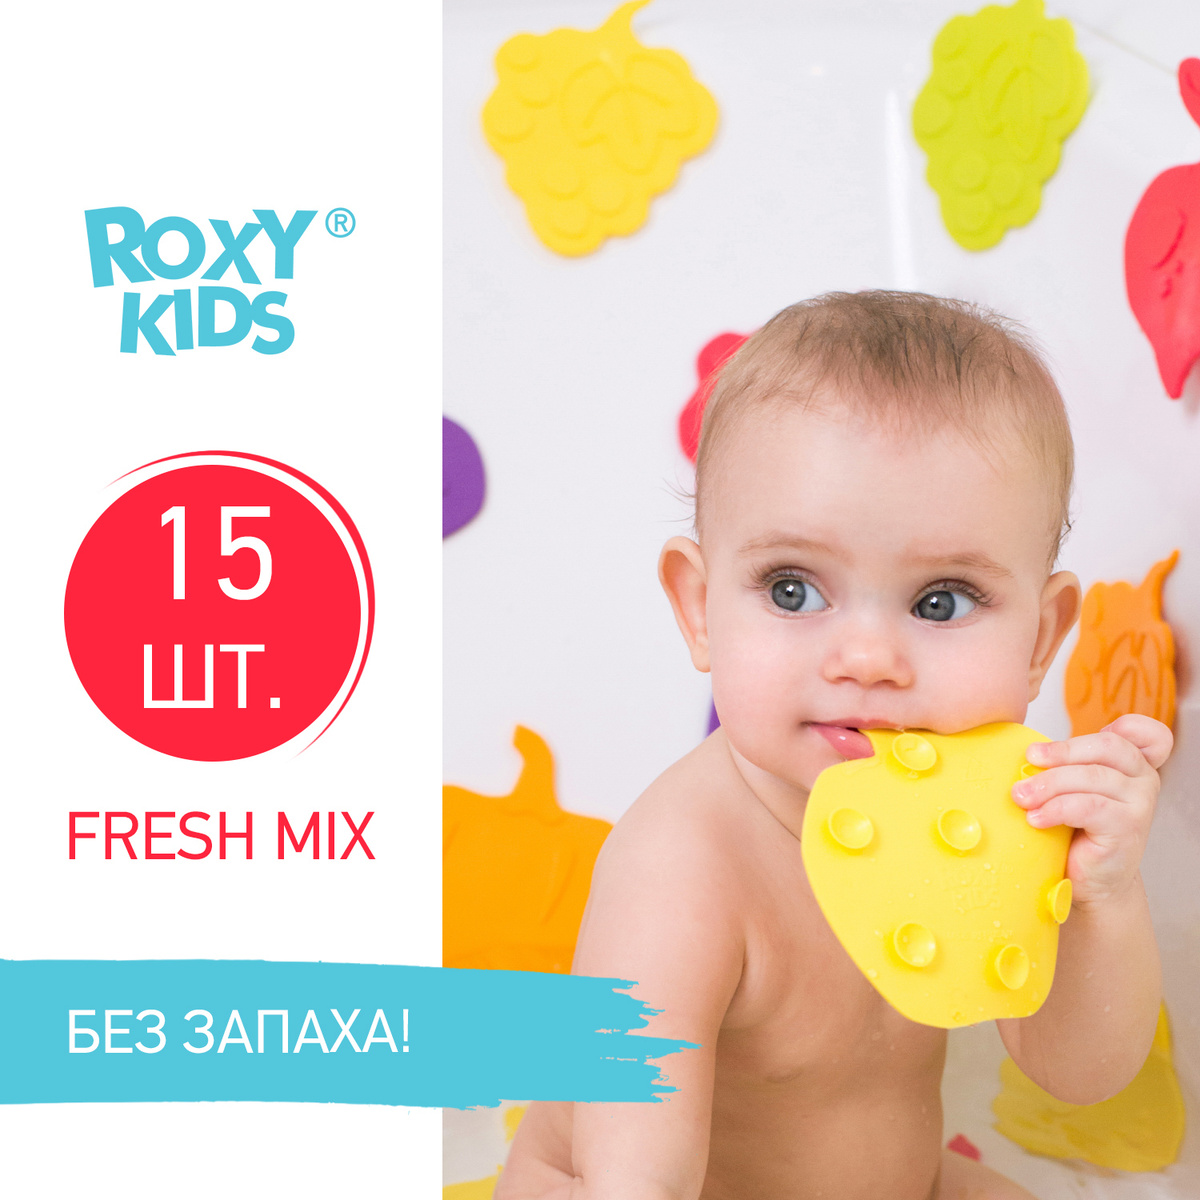 Антискользящие детские мини-коврики ROXY-KIDS для ванны, серия FRESH MIX. Цвета в ассортименте, 15 шт. #1